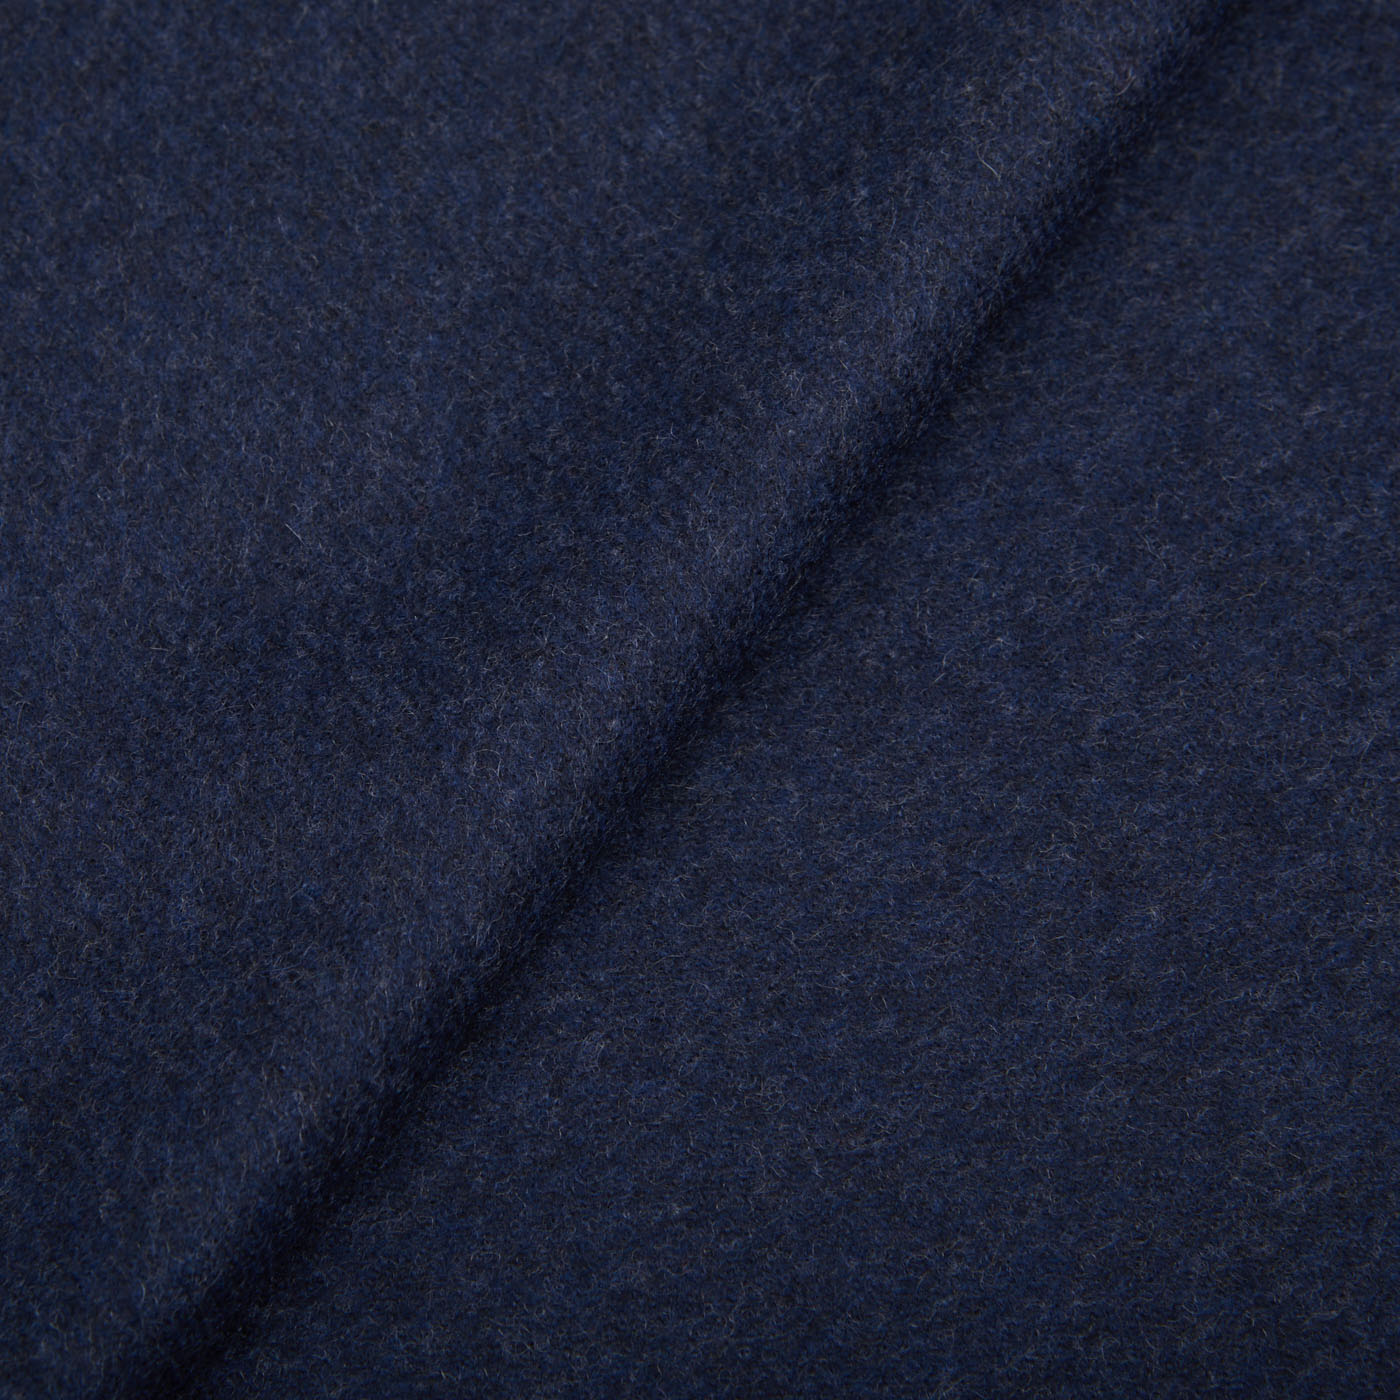 Piacenza Cashmere Dark Blue Cashmere Aeternum Scarf Fabric